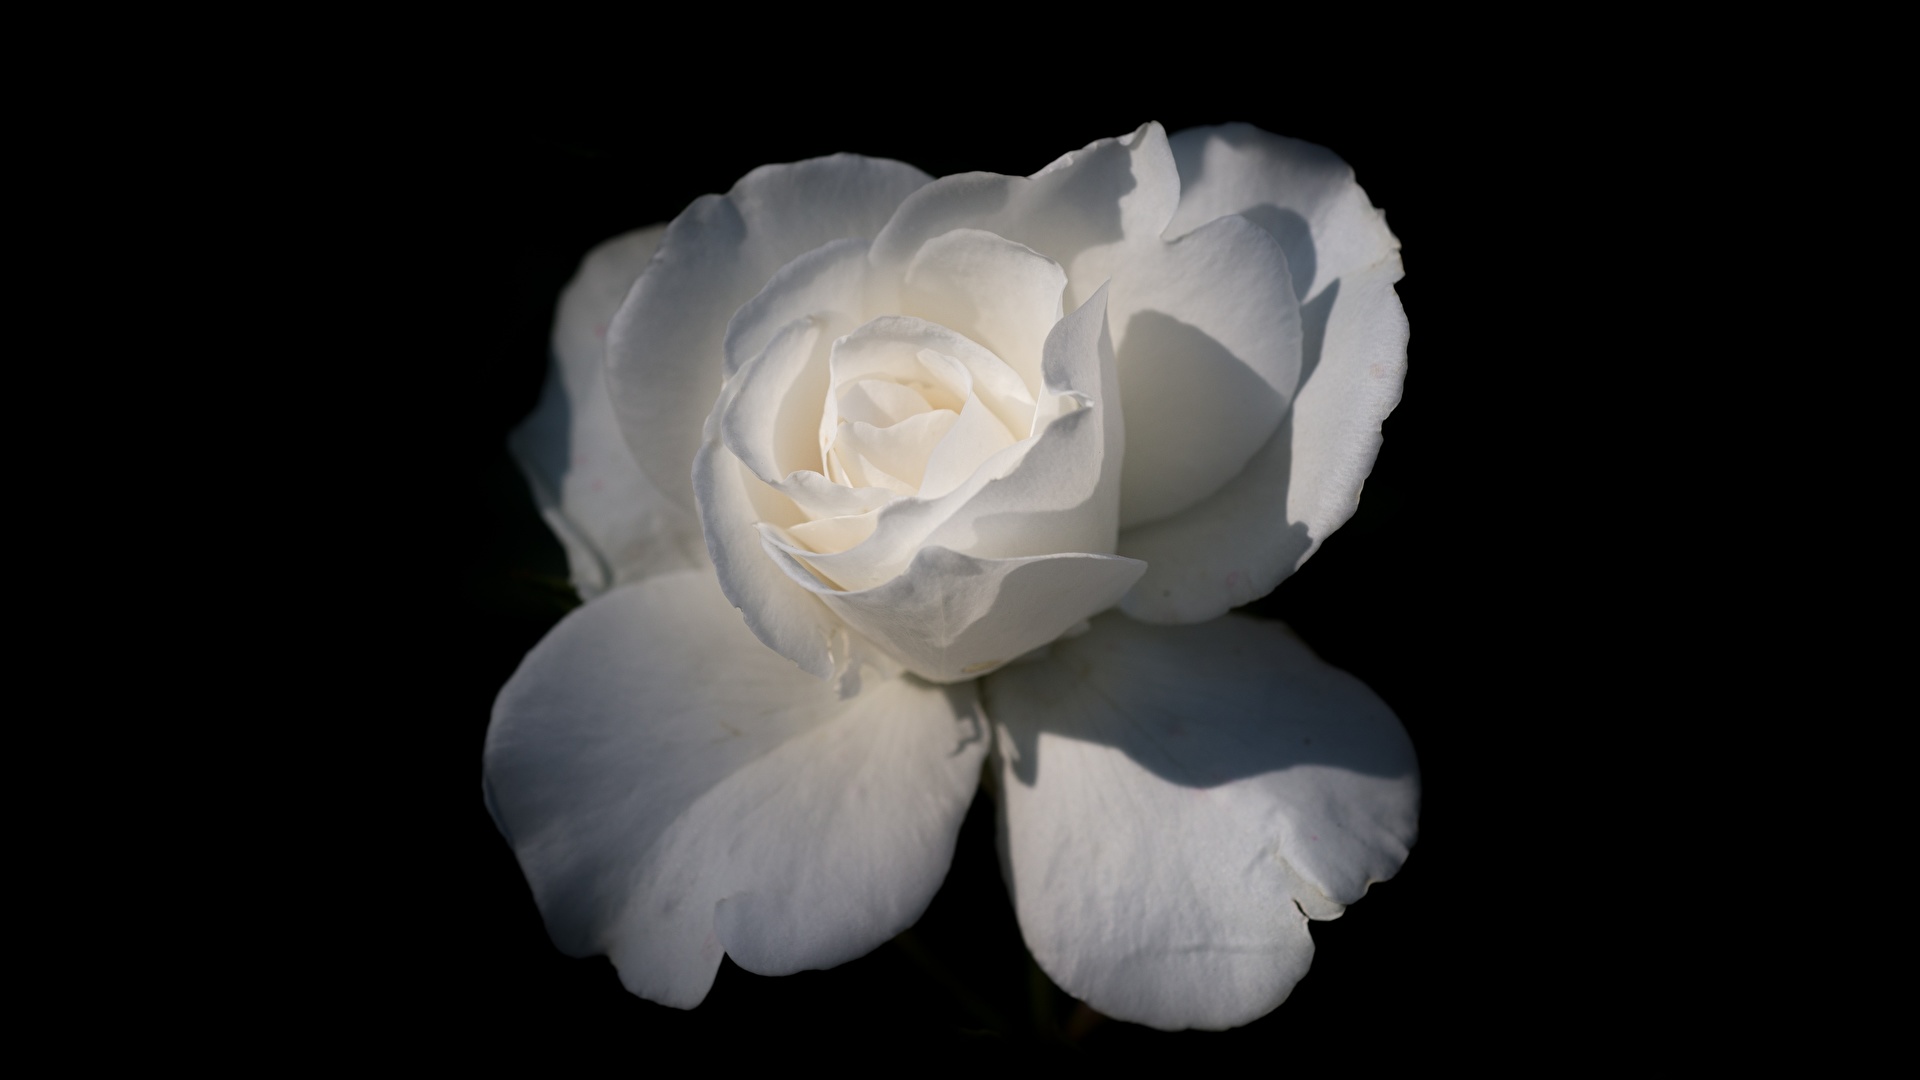 壁紙 19x1080 クローズアップ バラ 黒色背景 白 花 ダウンロード 写真